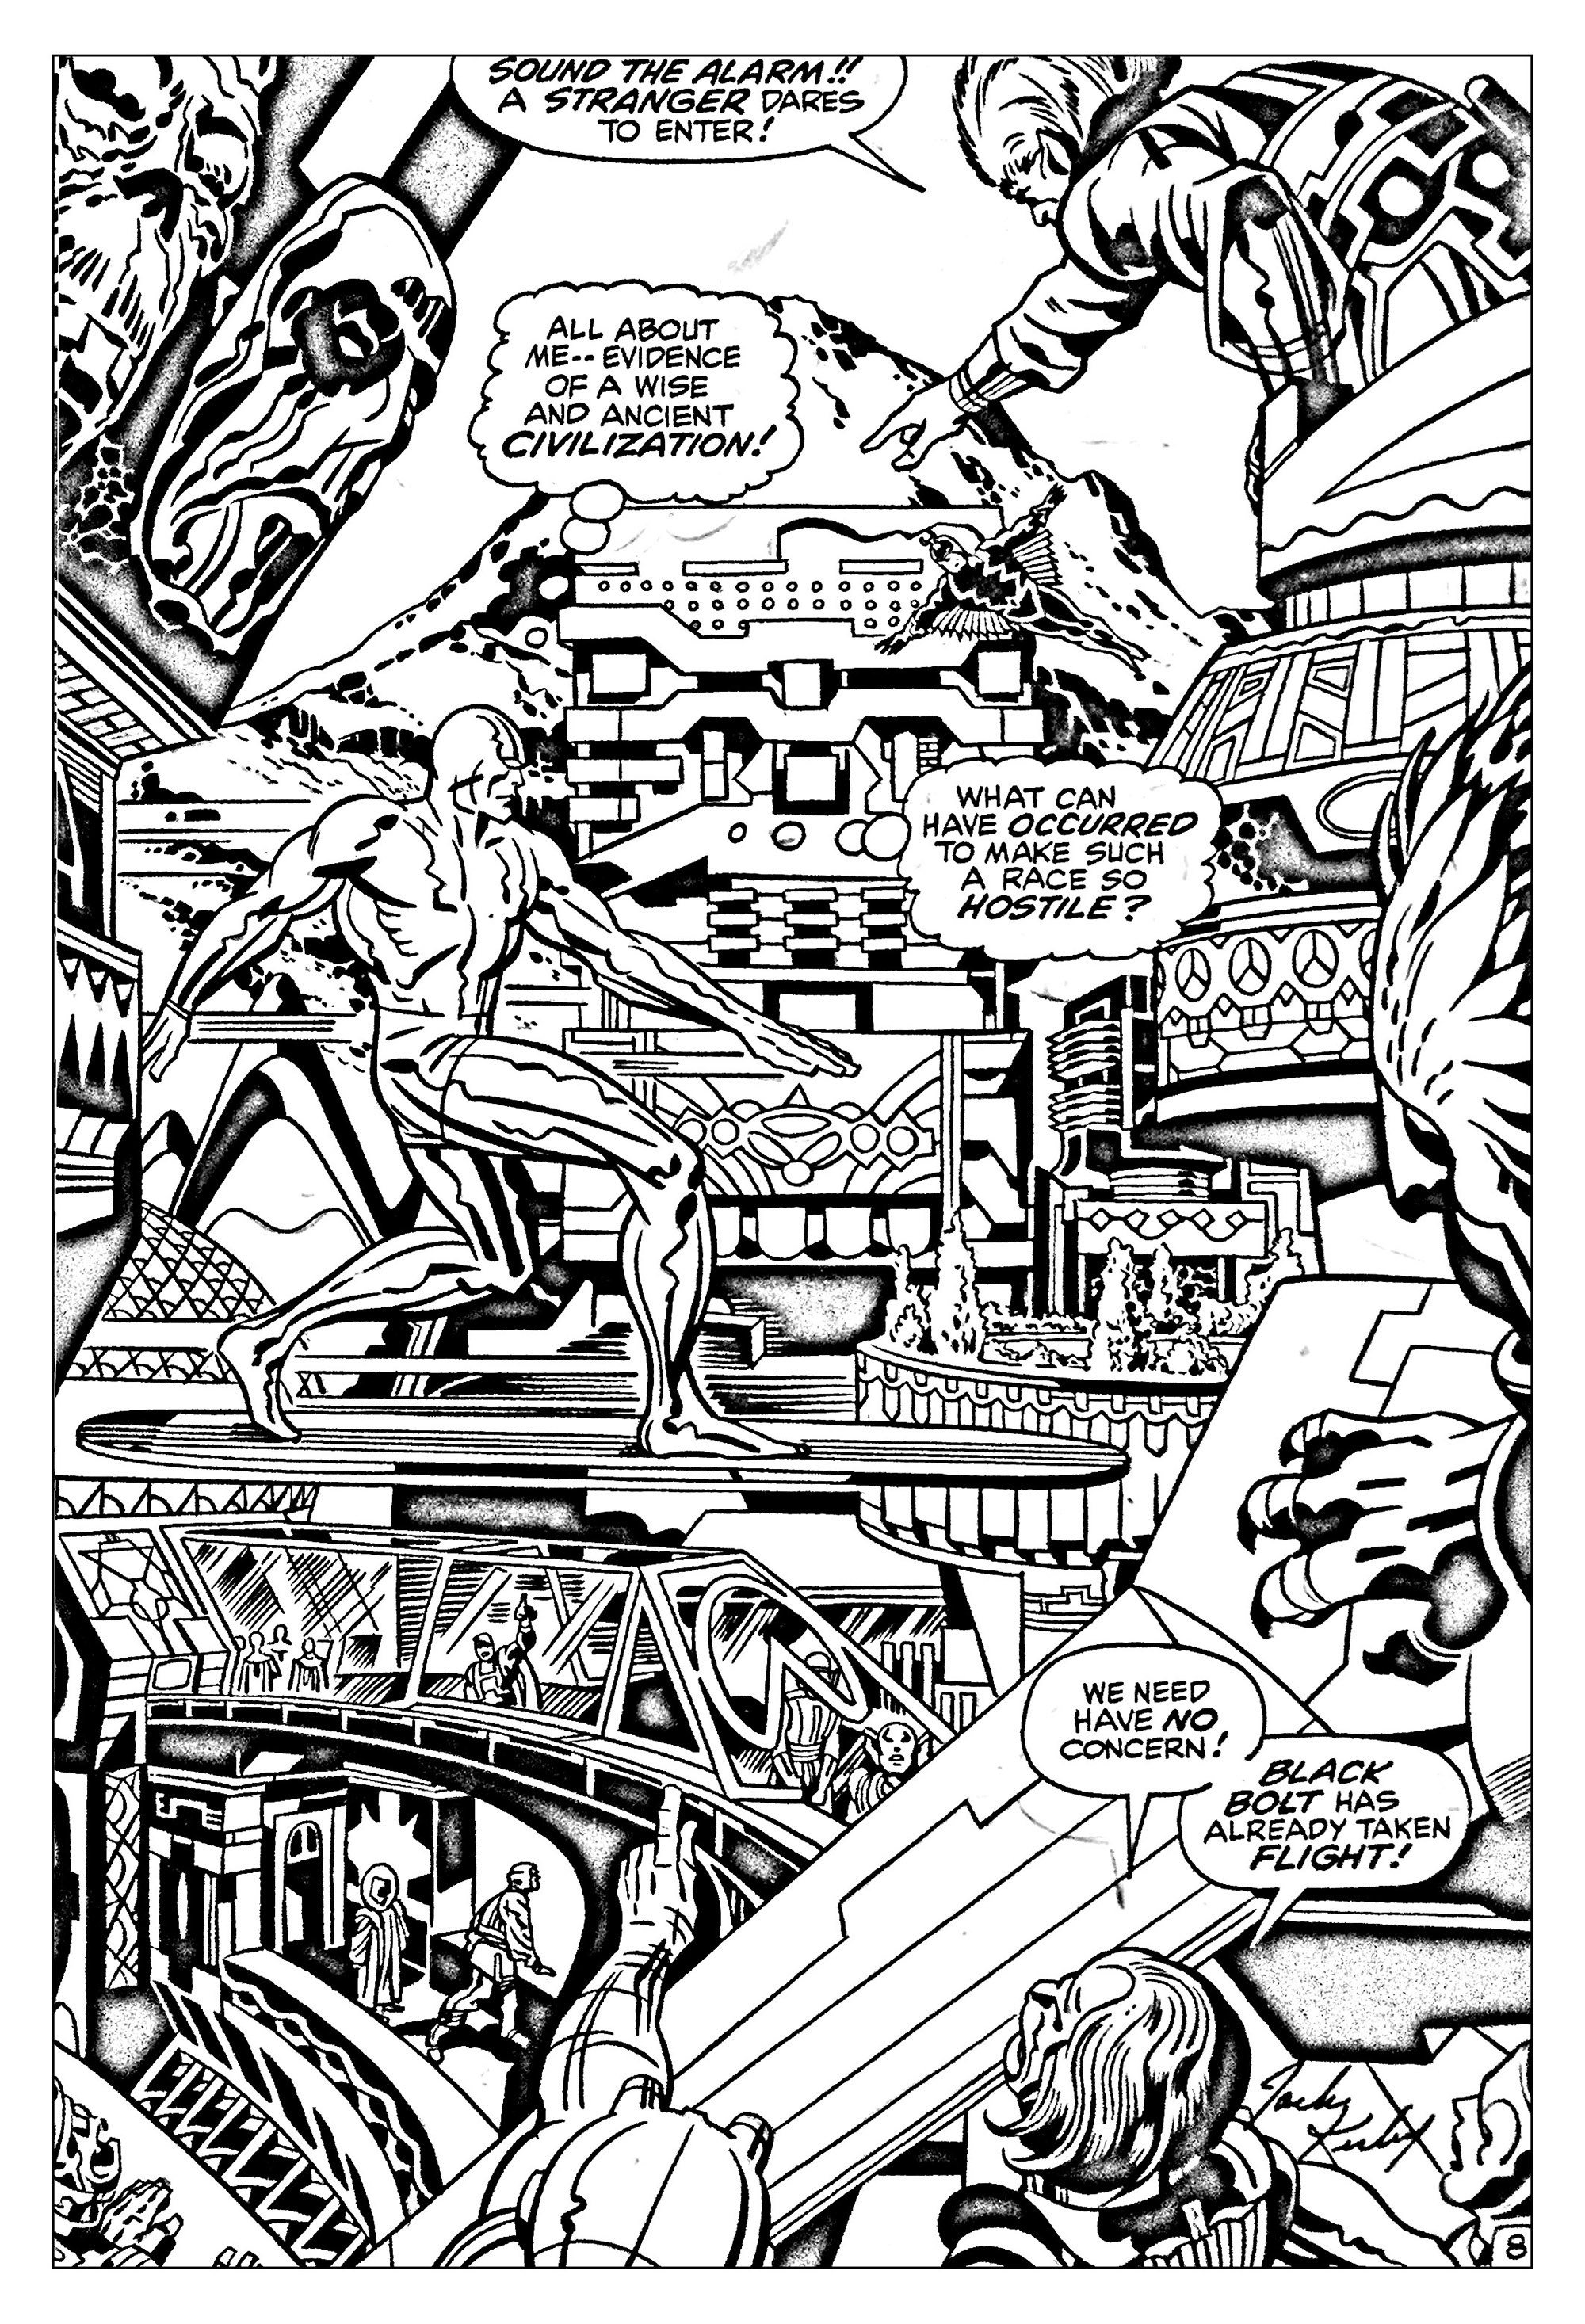 Coloriage créé à partir d'un dessin tiré d'un Comic 'Les quatre fantastique' (années 60) (Source : Jack Kirby, King of comics)